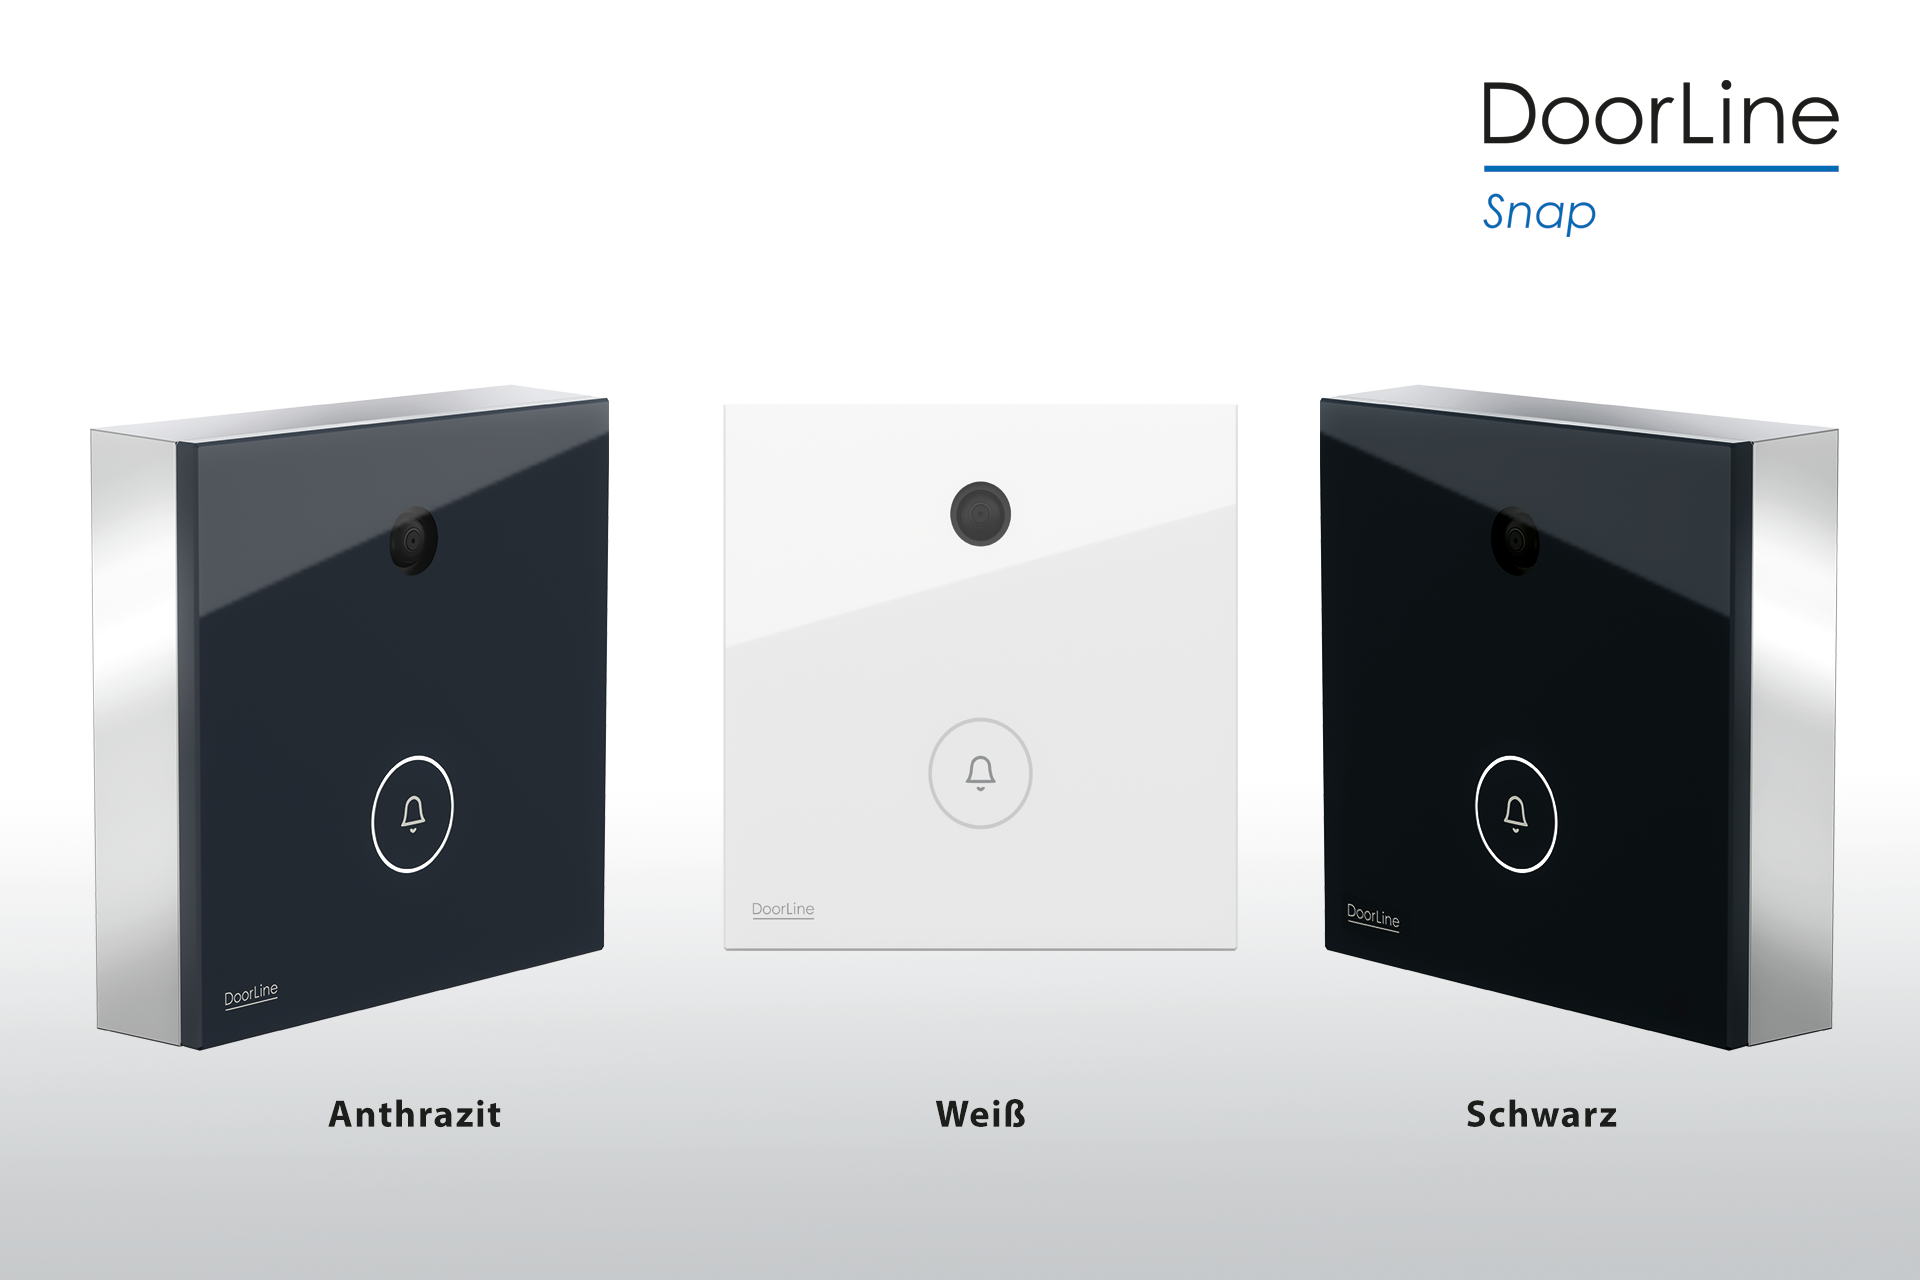 DoorLine Snap | Türklingel m. Kamera für FRITZ!Box, WLAN, FRITZ!App, DSGVO-konform, Schaltausgänge